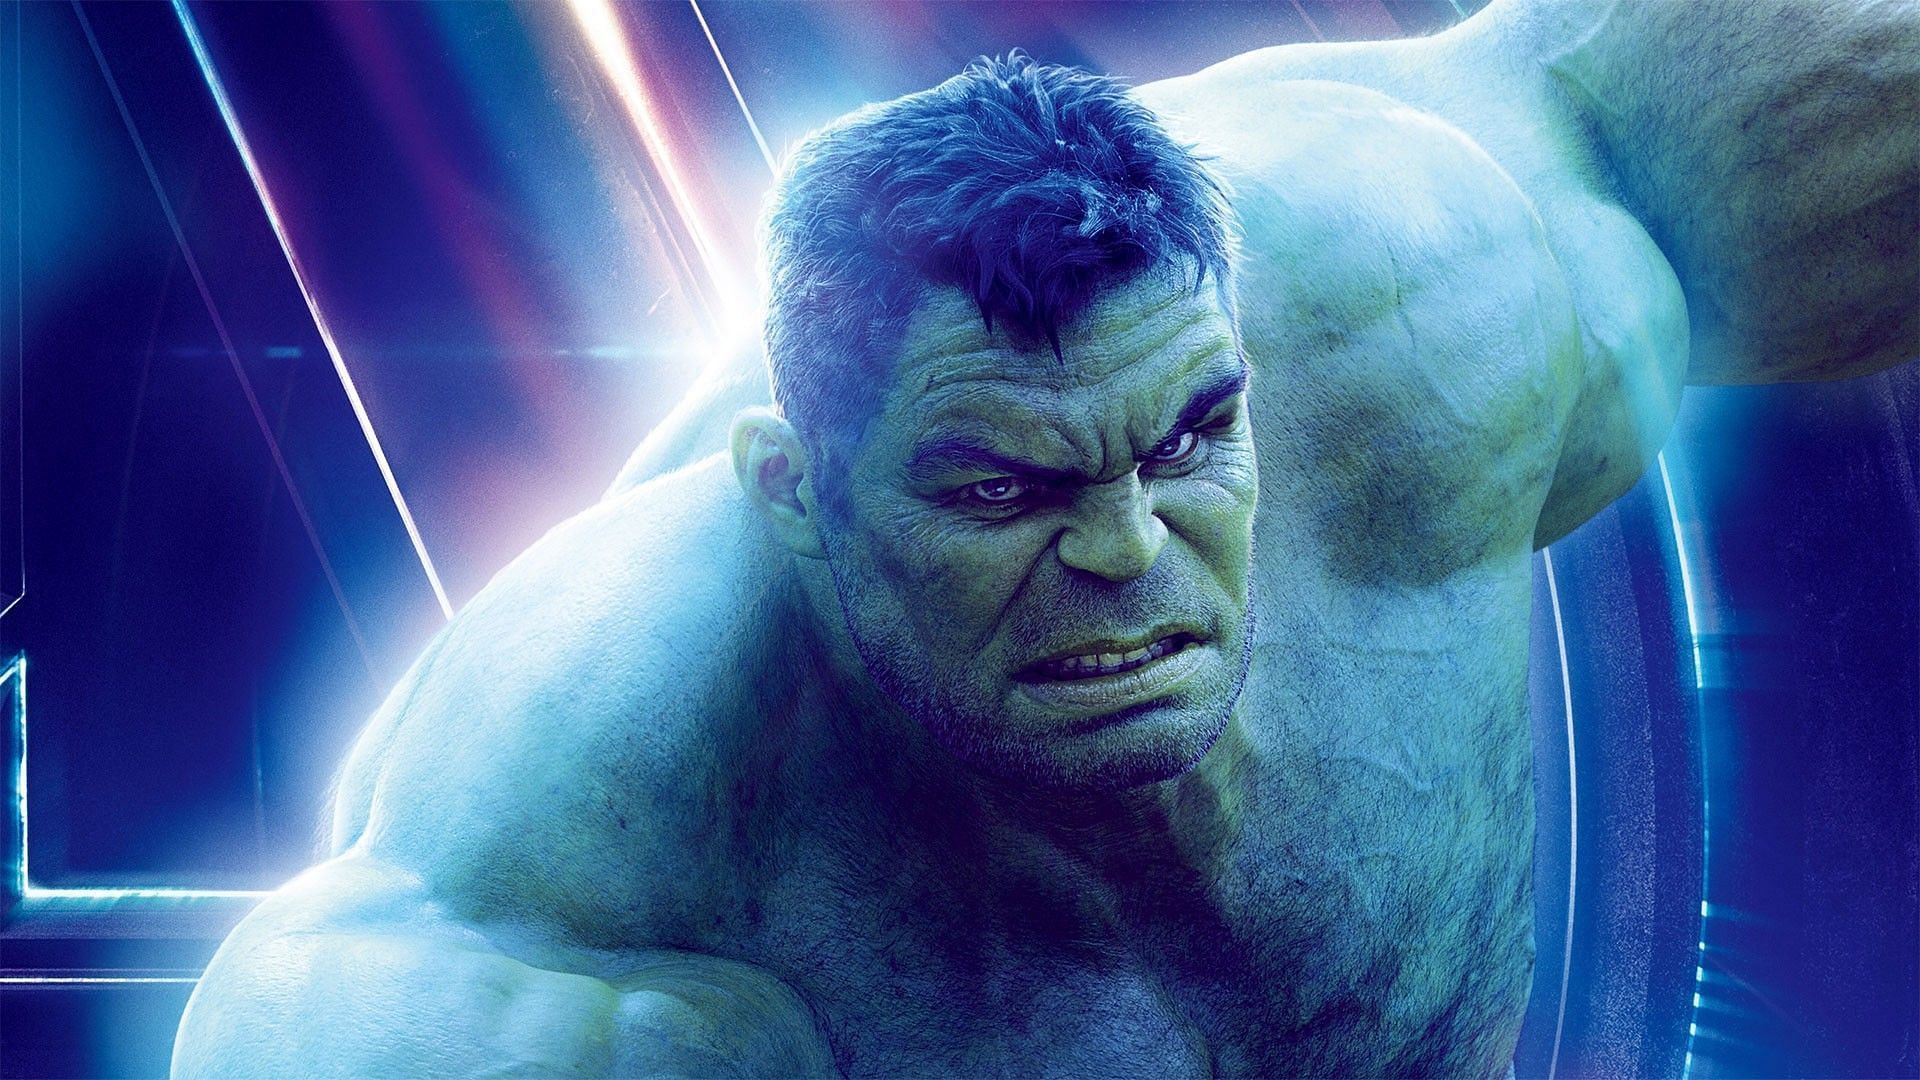 Hulk from Avengers: Endgame (Image via Marvel)